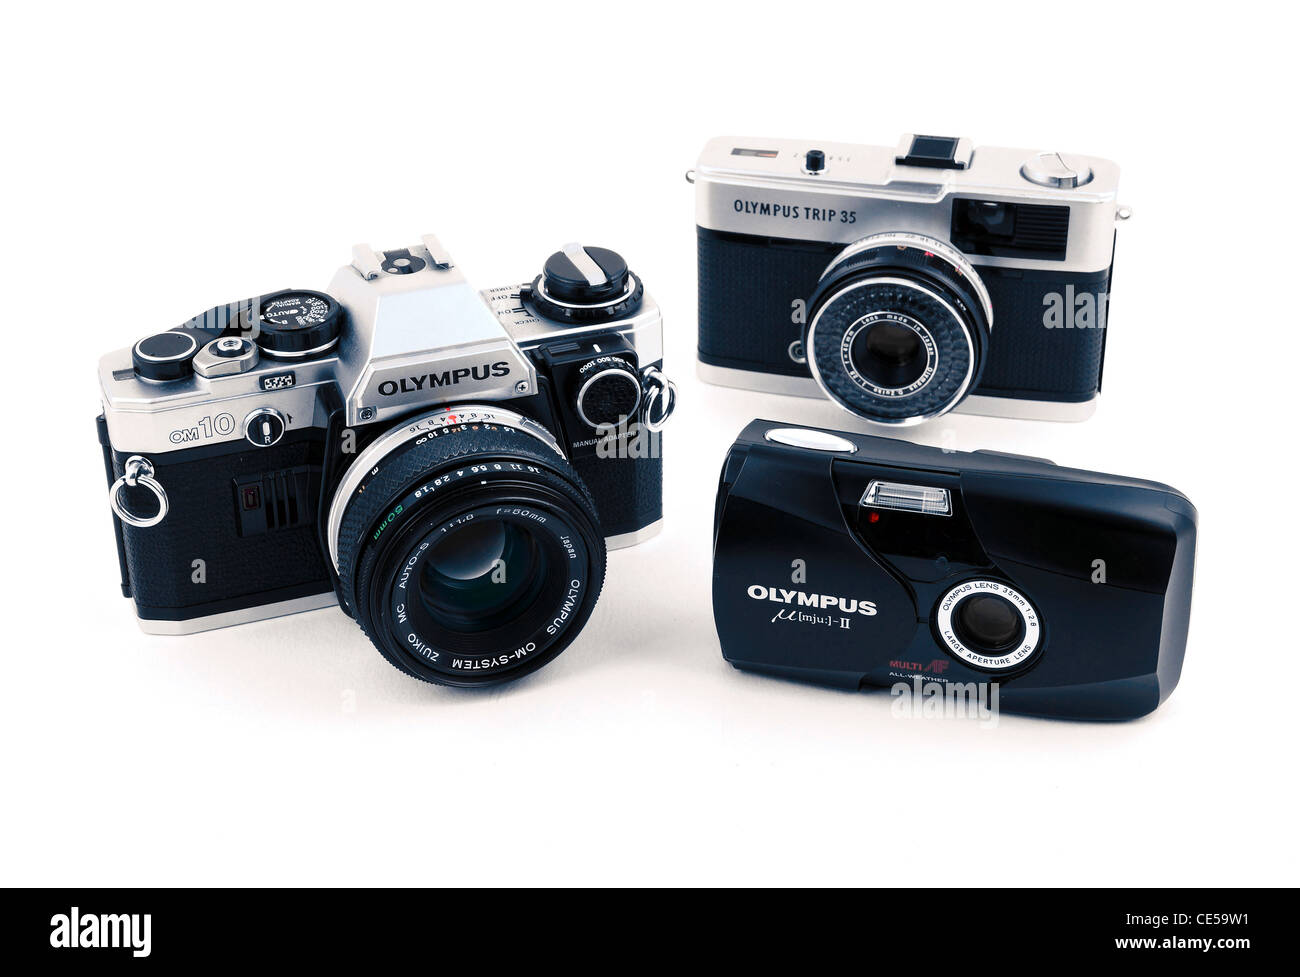 Una colección de antiguas cámaras de película 35mm Olympus Foto de stock